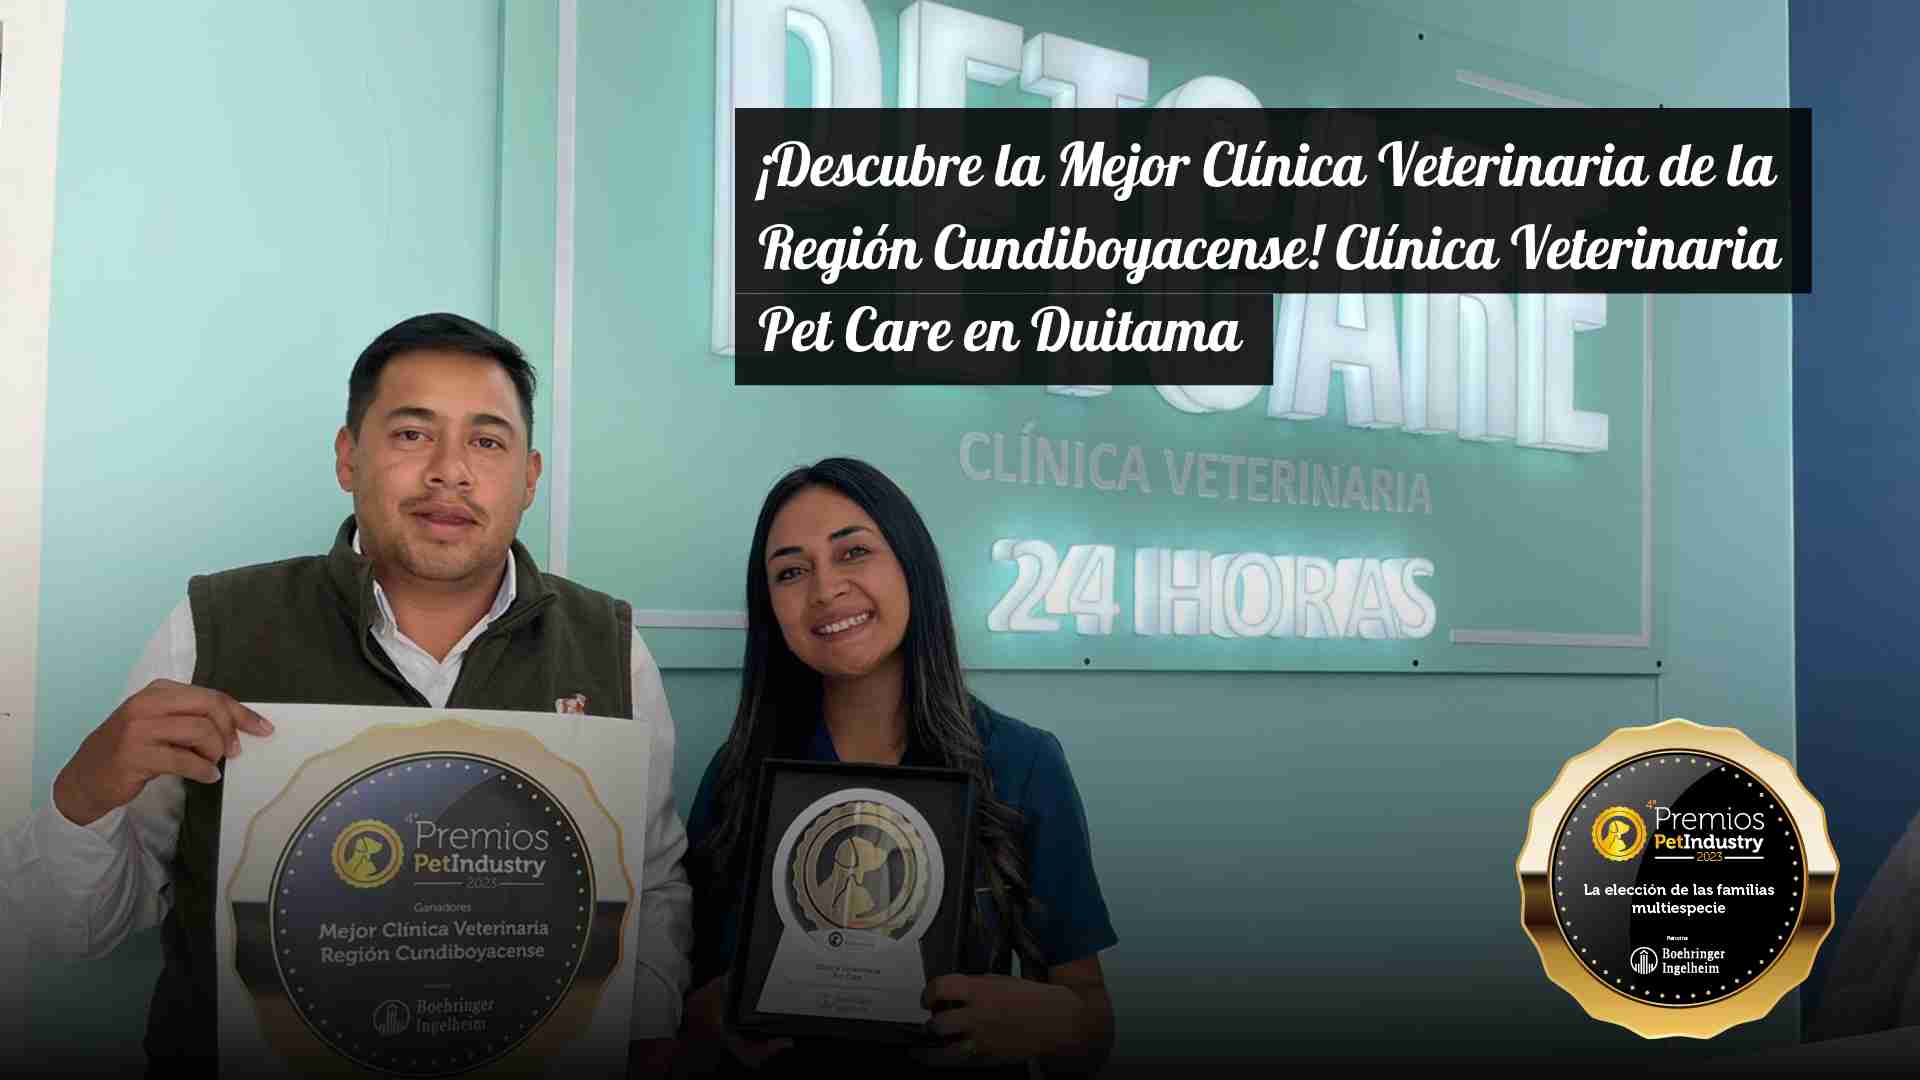 ¡Descubre la Mejor Clínica Veterinaria de la Región Cundiboyacense! Clínica Veterinaria Pet Care en Duitama